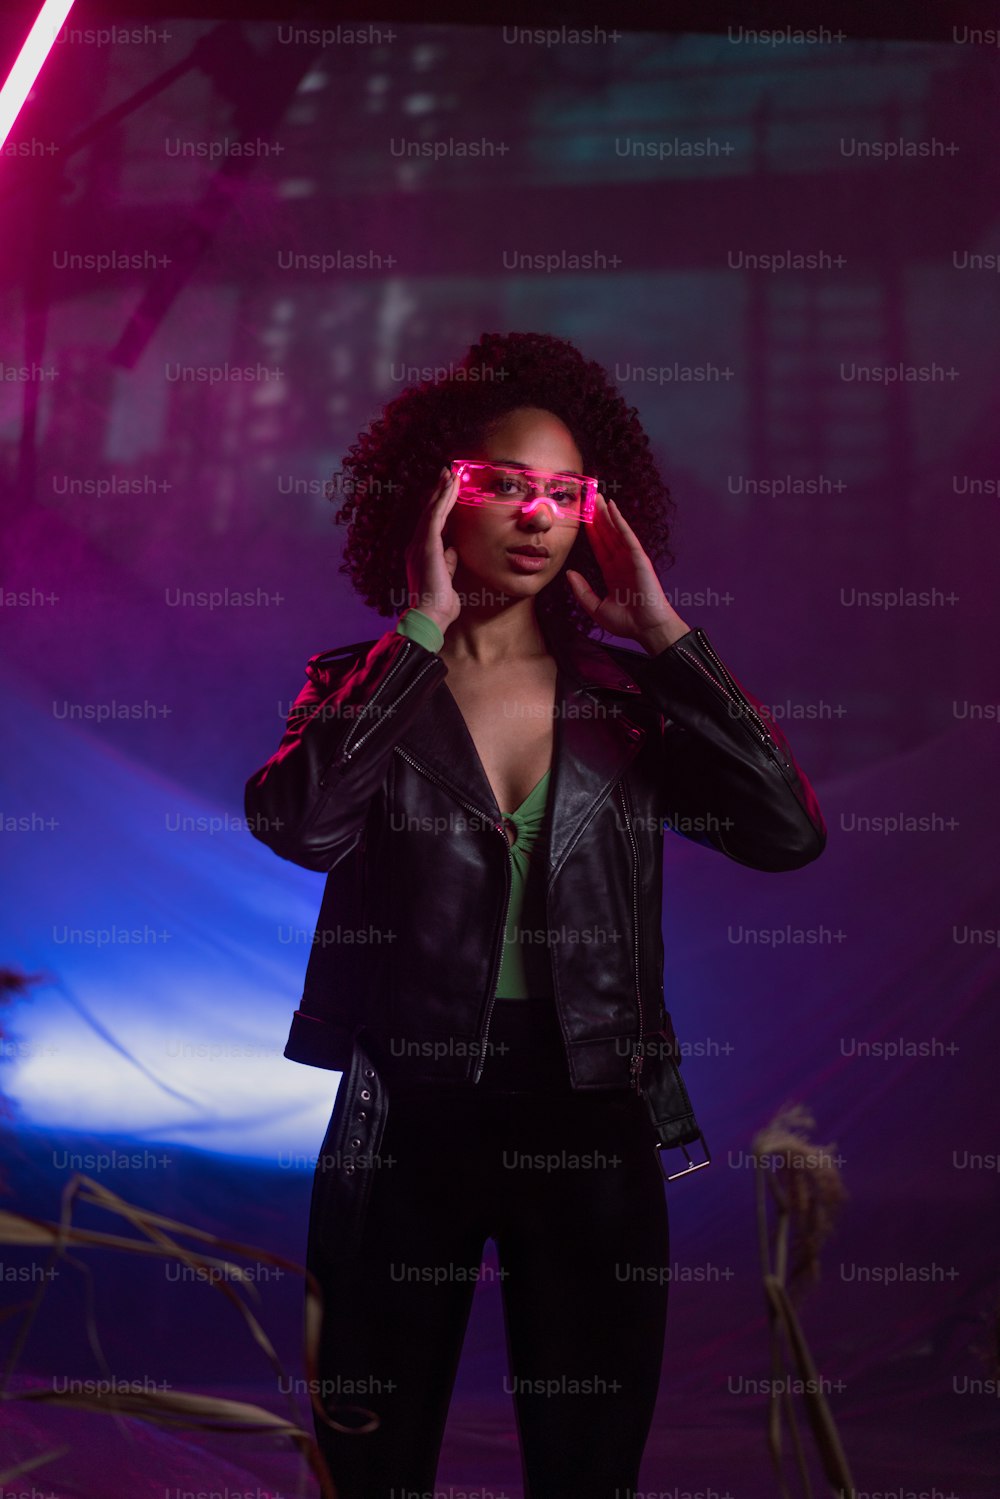 Metaverse digitale Cyberwelt-Technologie, eine Frau mit Virtual-Reality-VR-Brille, die Augmented-Reality-Spiel spielt, futuristischer Lebensstil